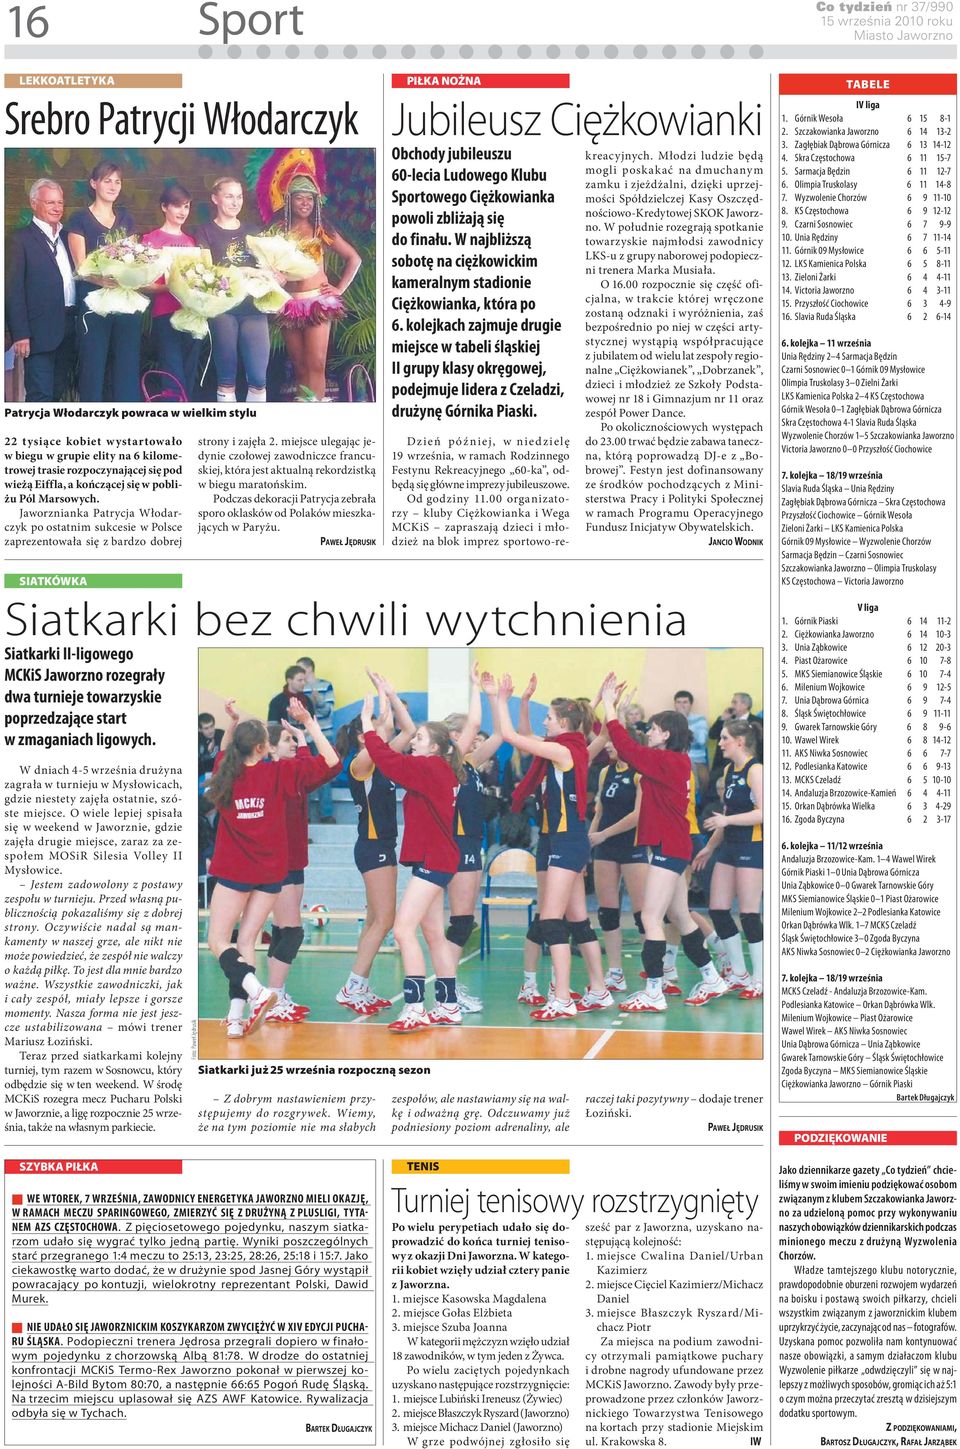 Jaworznianka Patrycja Włodarczyk po ostatnim sukcesie w Polsce zaprezentowała się z bardzo dobrej SIATKÓWKA Siatkarki II-ligowego MCKiS Jaworzno rozegrały dwa turnieje towarzyskie poprzedzające start